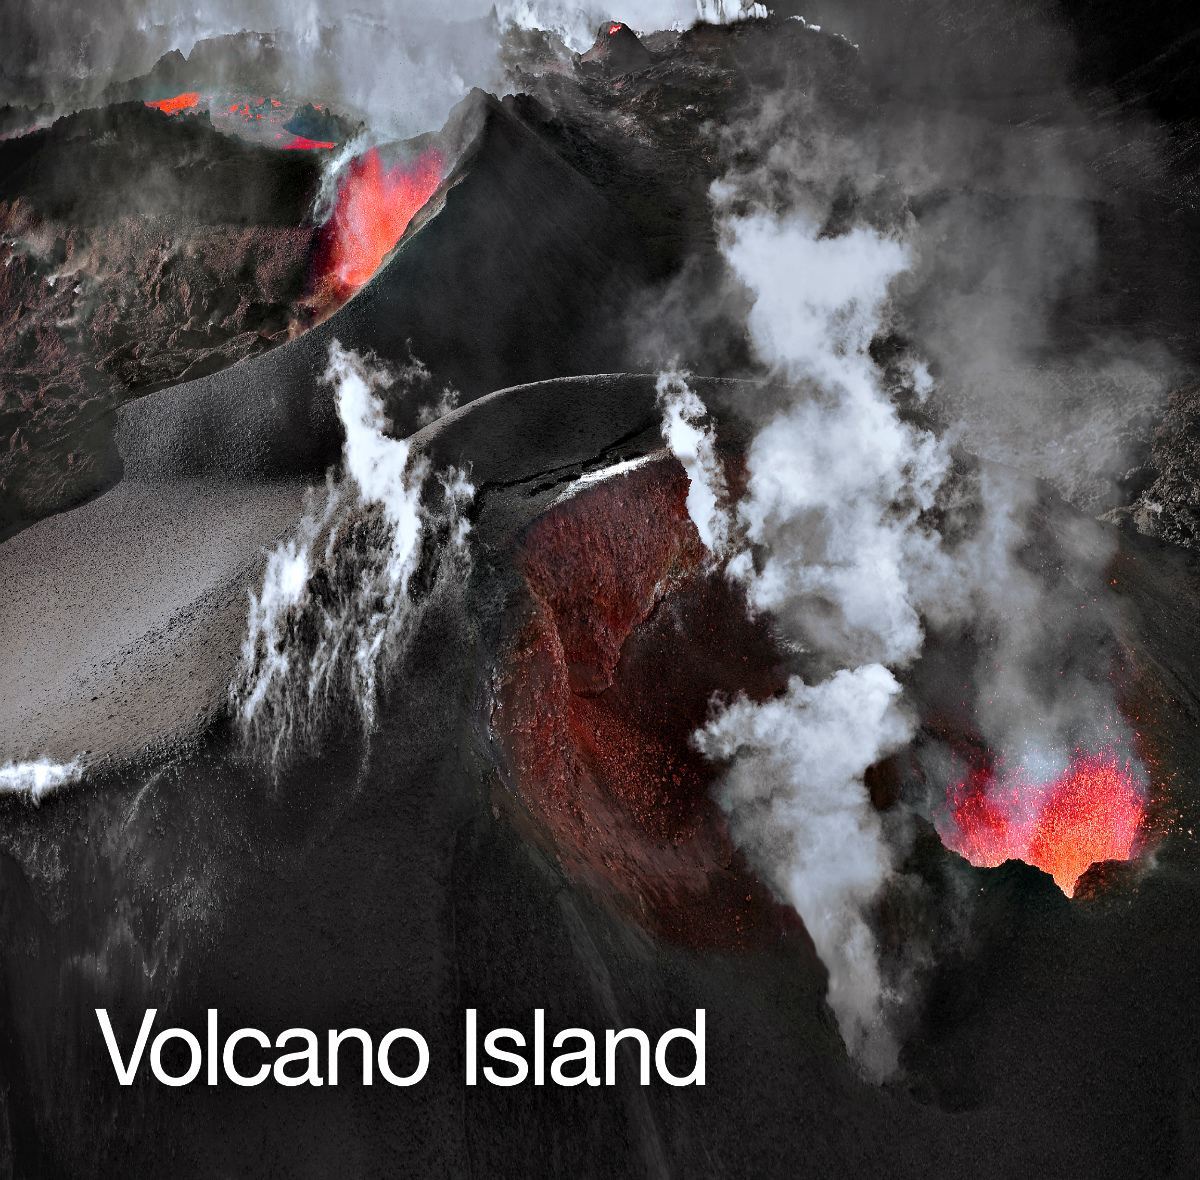 Volcano Island eftir Sigurgeir Sigurjónsson